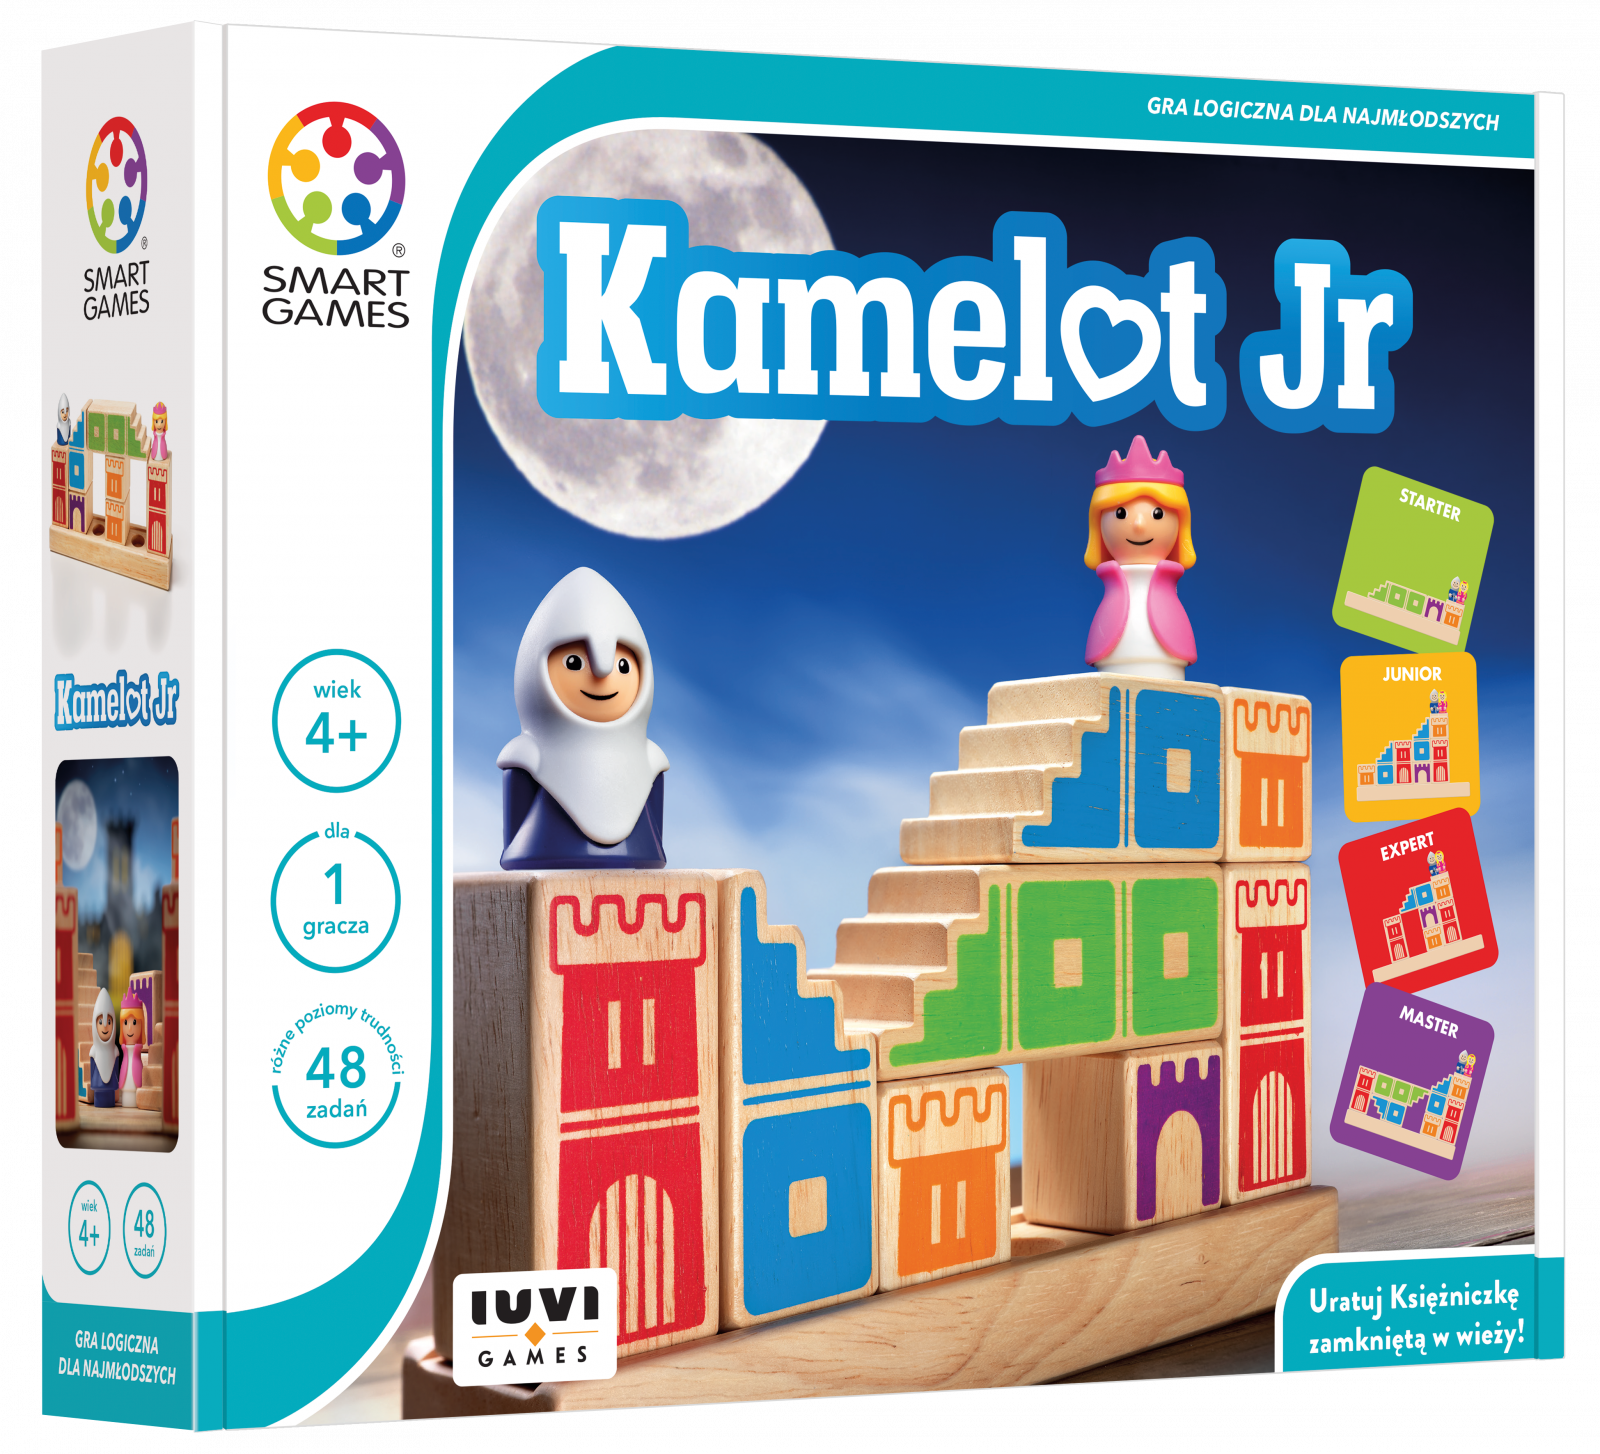 Smart Games - Kamelot Jr.